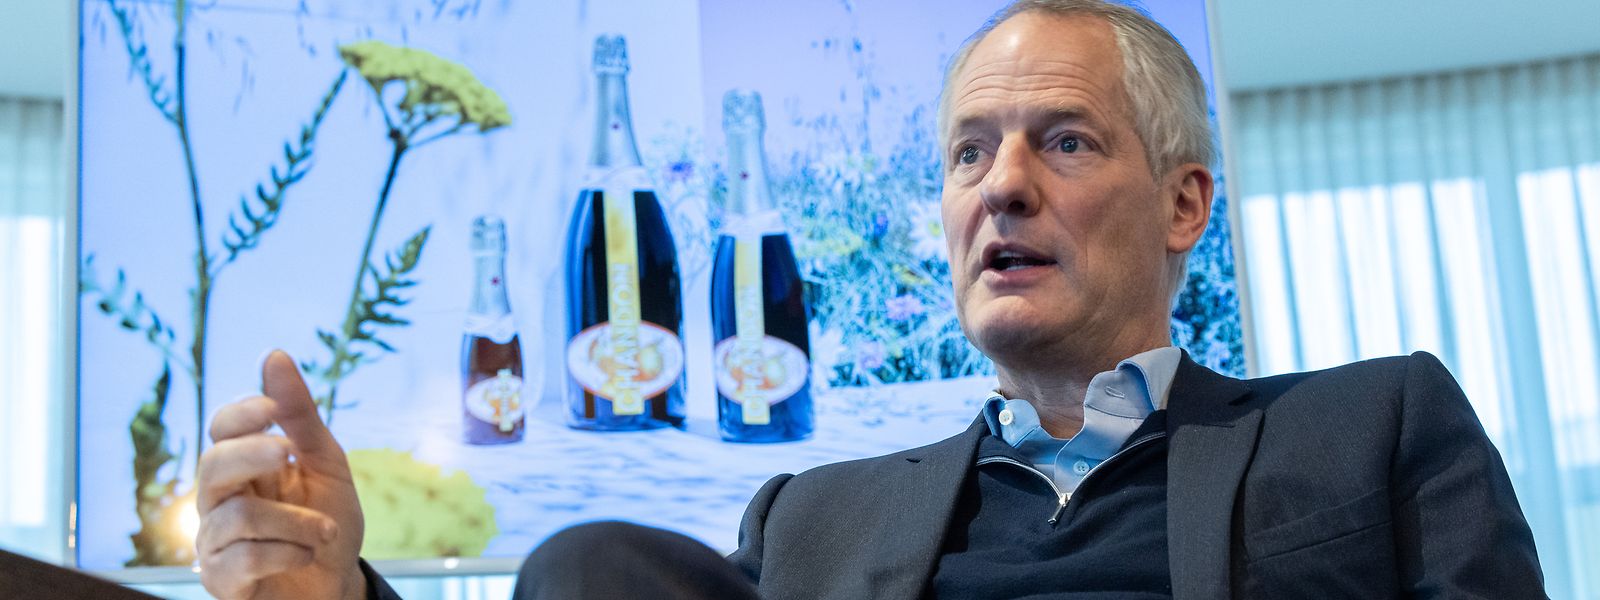 Seit 2017 ist Philippe Schaus Präsident und geschäftsführender Generaldirektor von Moët Hennessy, dem Wein- und Spirituosengeschäft der LVMH-Gruppe.